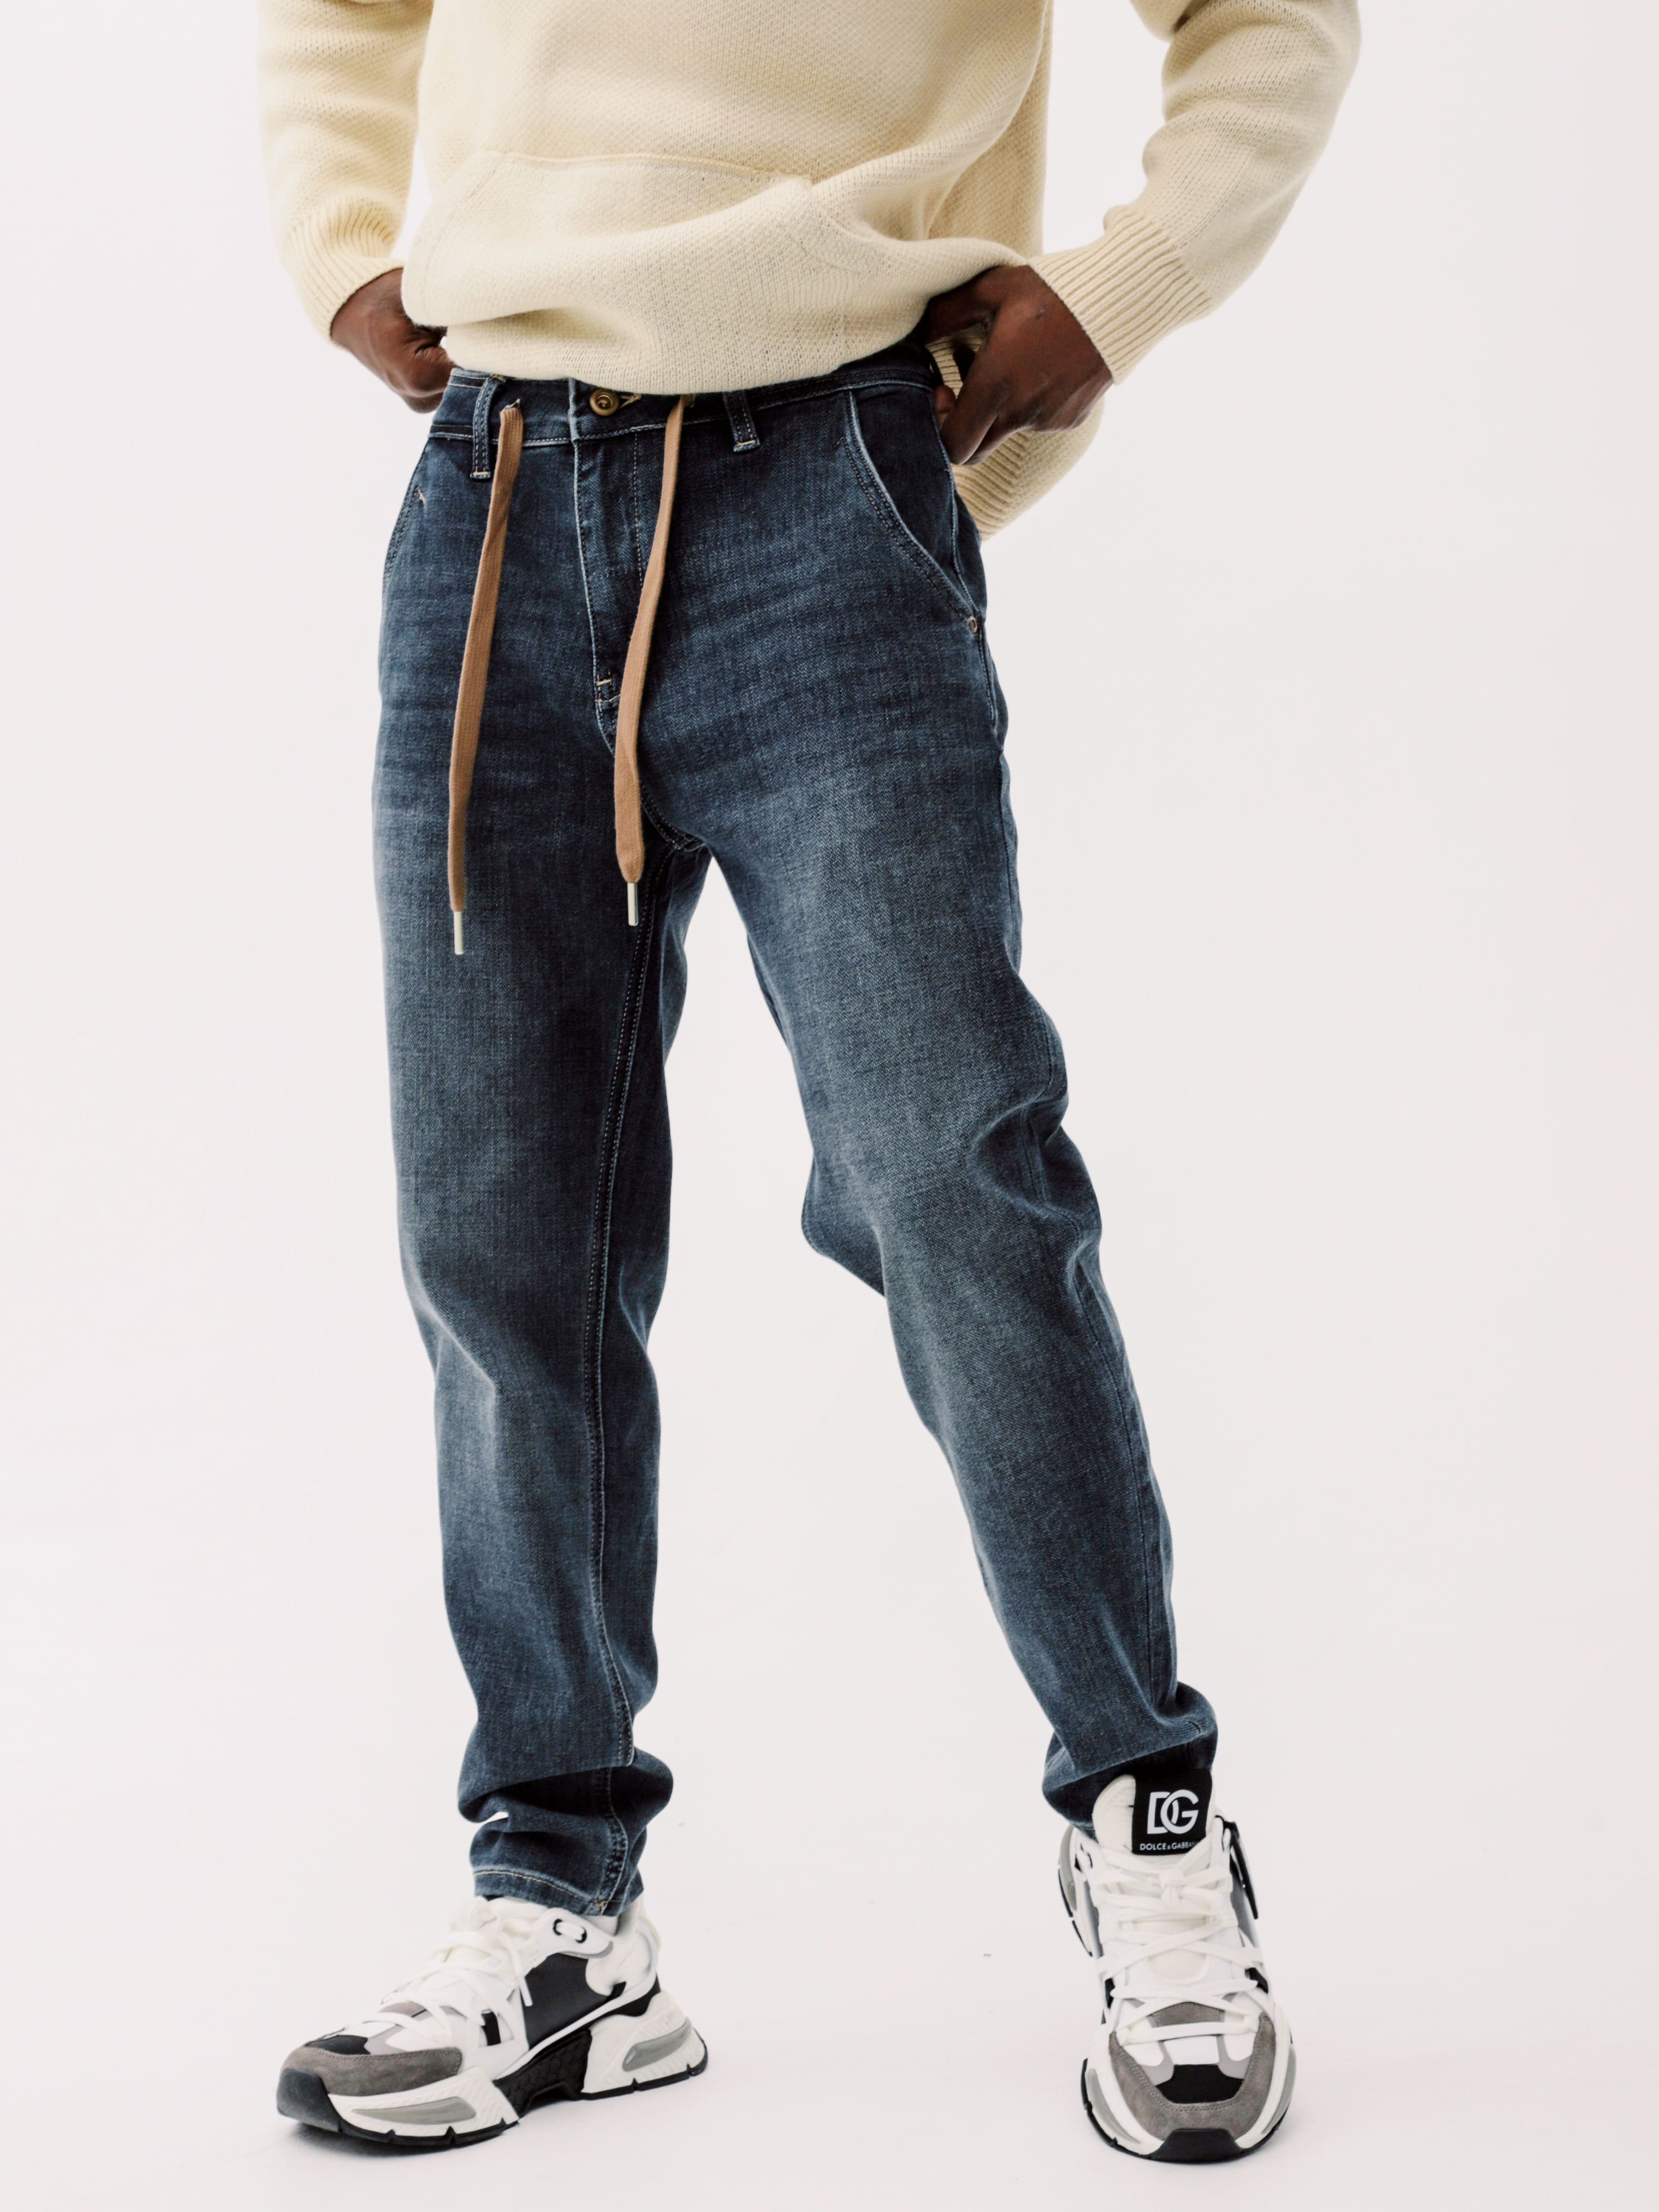 Мужские джинсы: разнообразие моделей на любой вкус